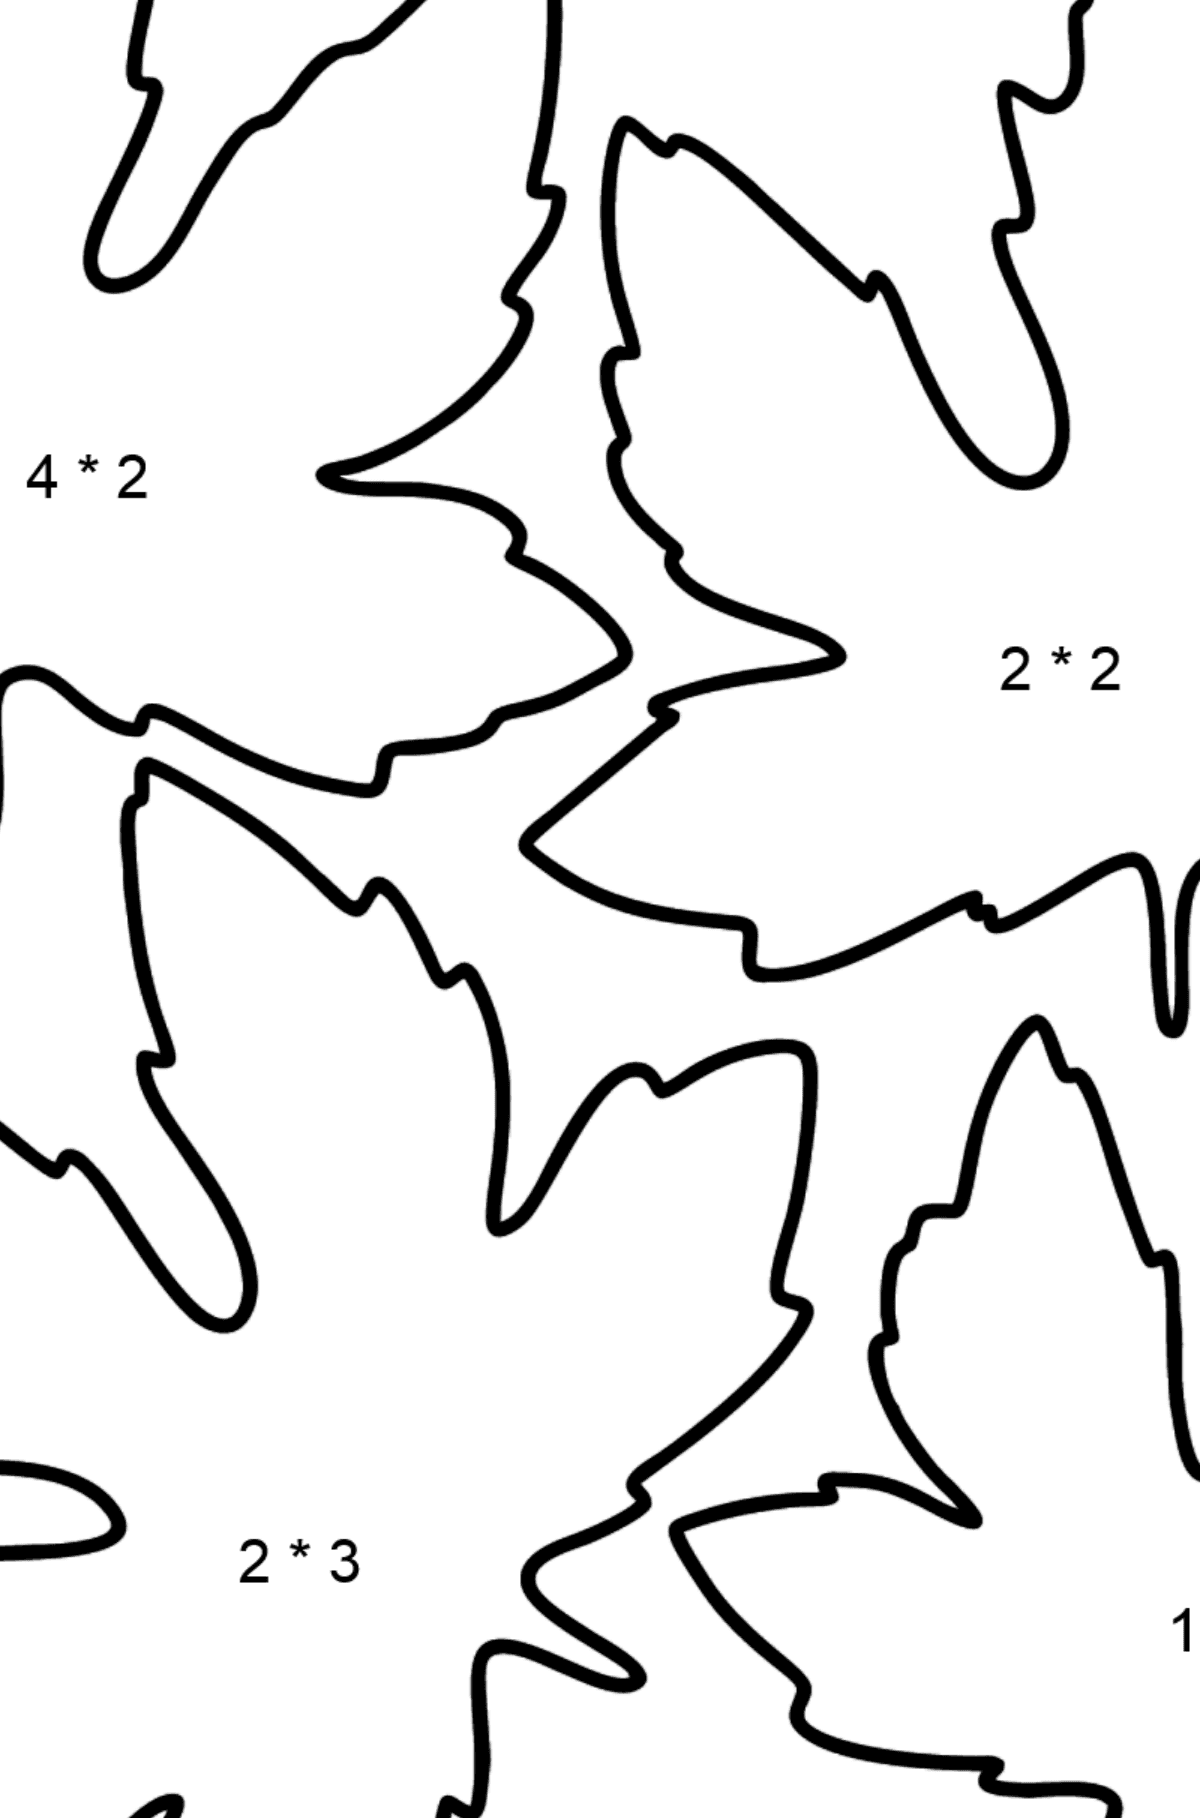 Dibujo de Hojas de Arce para colorear - Colorear con Matemáticas - Multiplicaciones para Niños